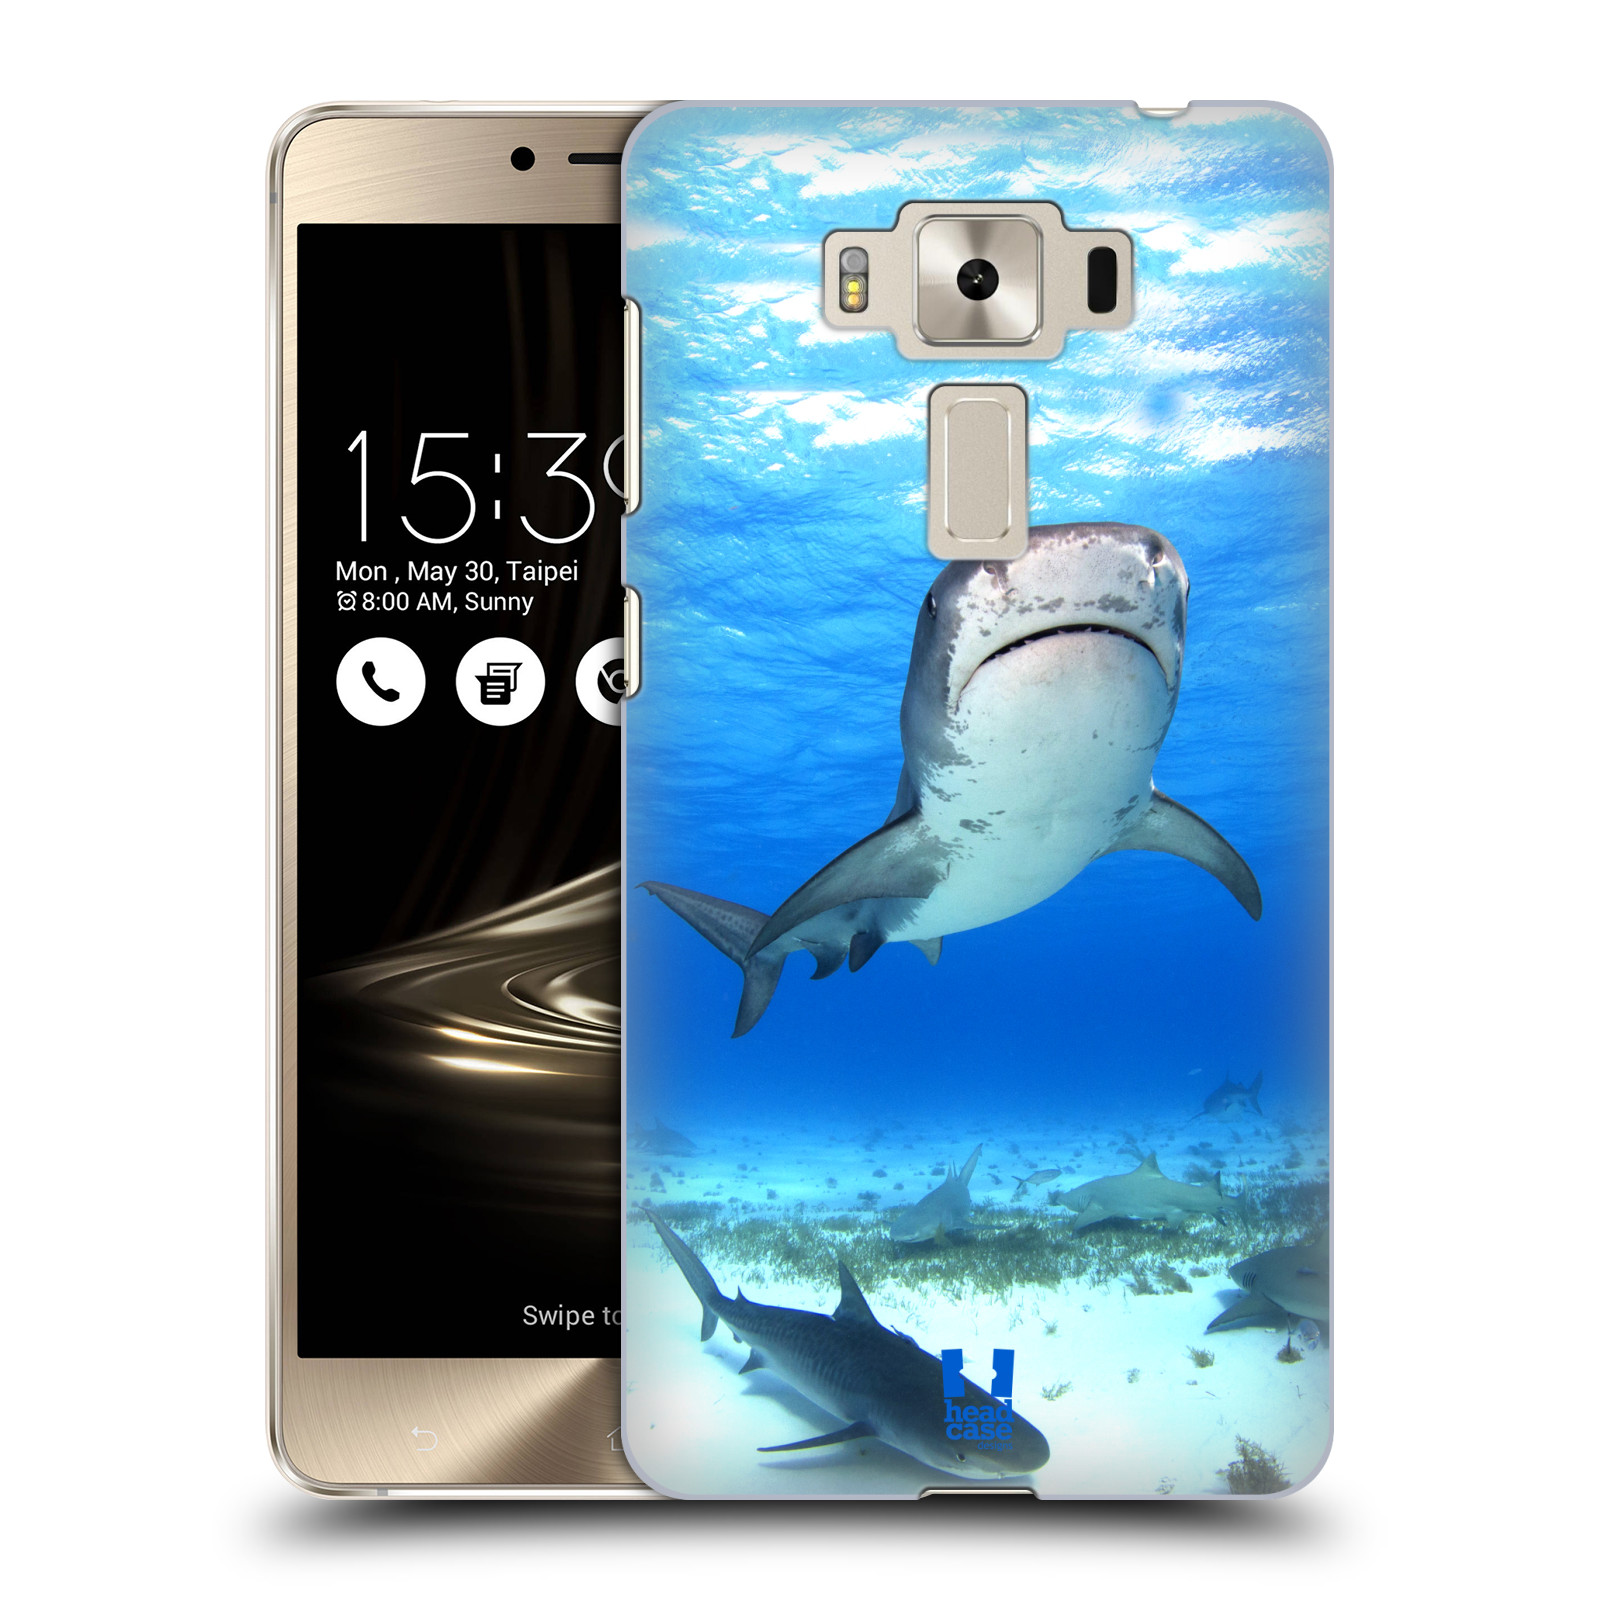 HEAD CASE plastový obal na mobil Asus Zenfone 3 DELUXE ZS550KL vzor slavná zvířata foto žralok tygří